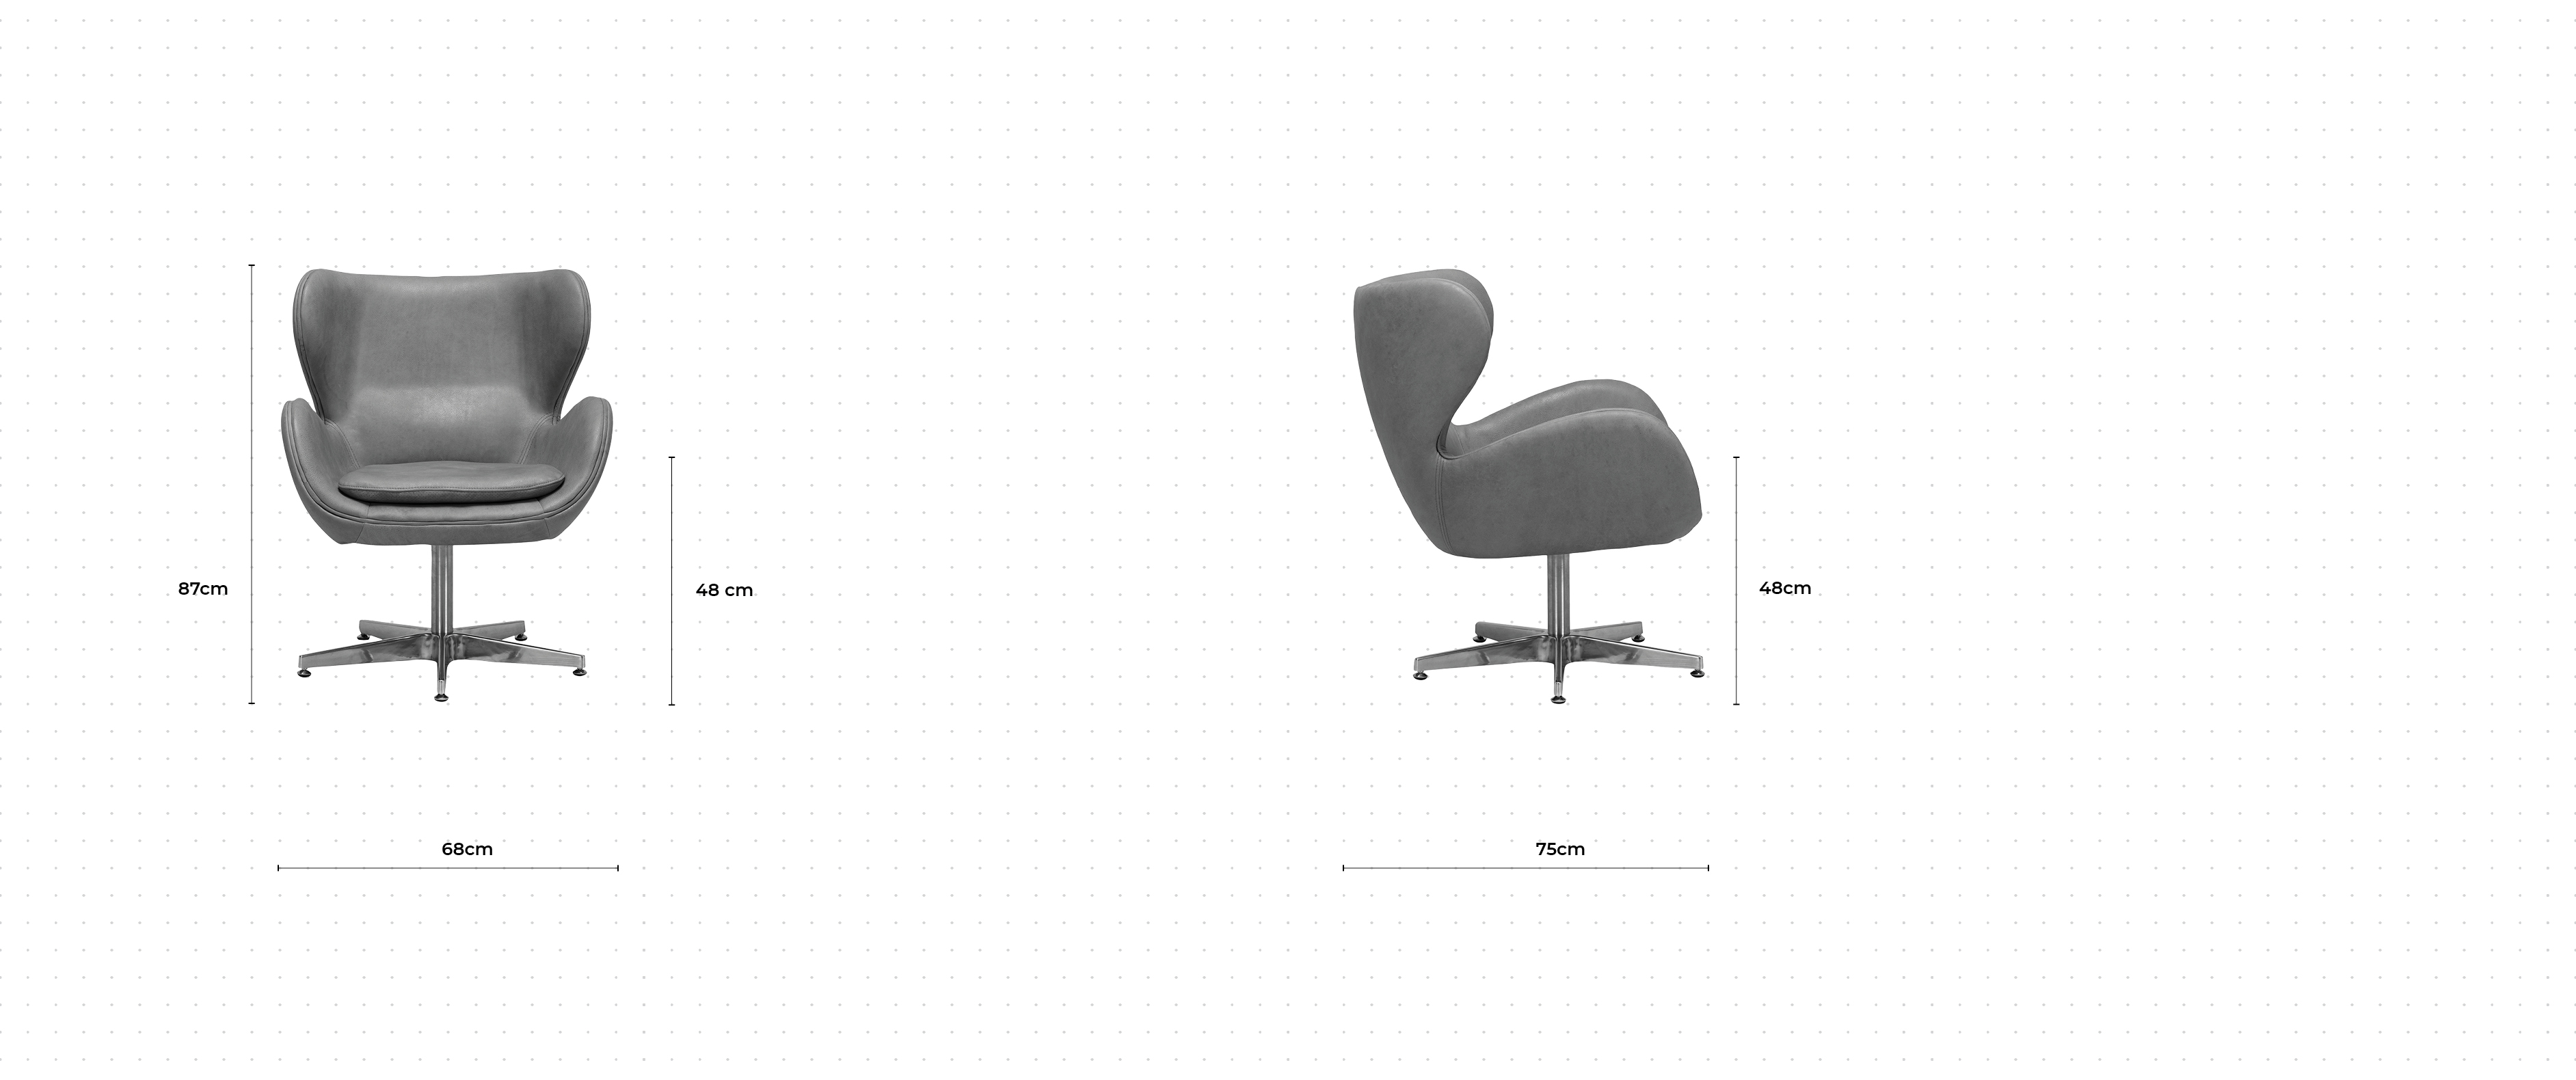 Lennox Chair dimensions